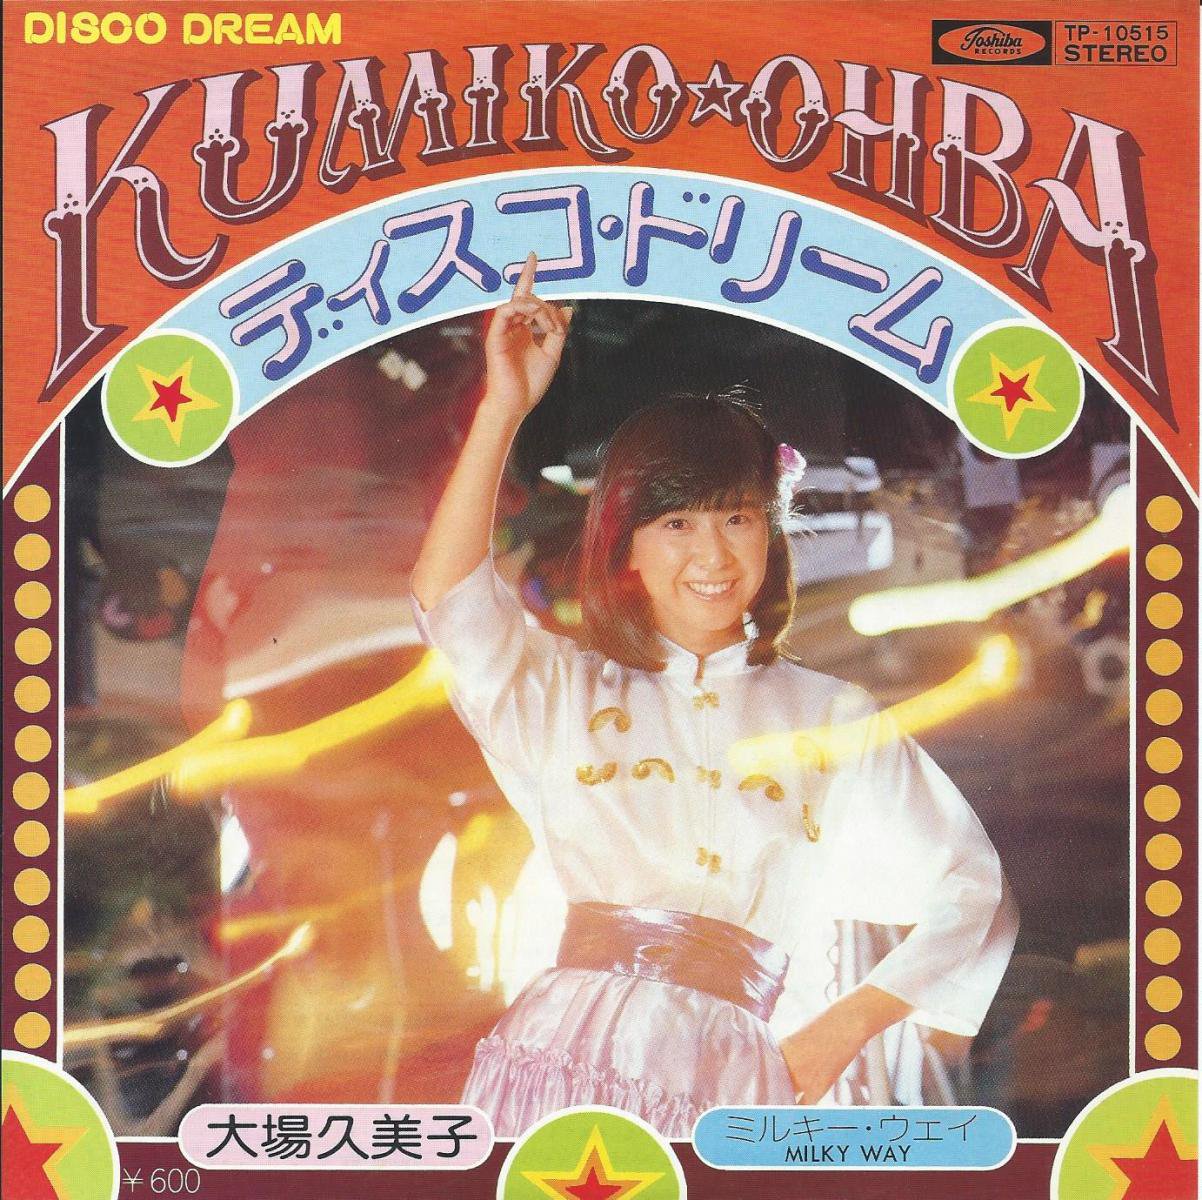 大場久美子 KUMIKO OHBA / ディスコ・ドリーム DISCO DREAM / ミルキー・ウェイ MILKY WAY (7